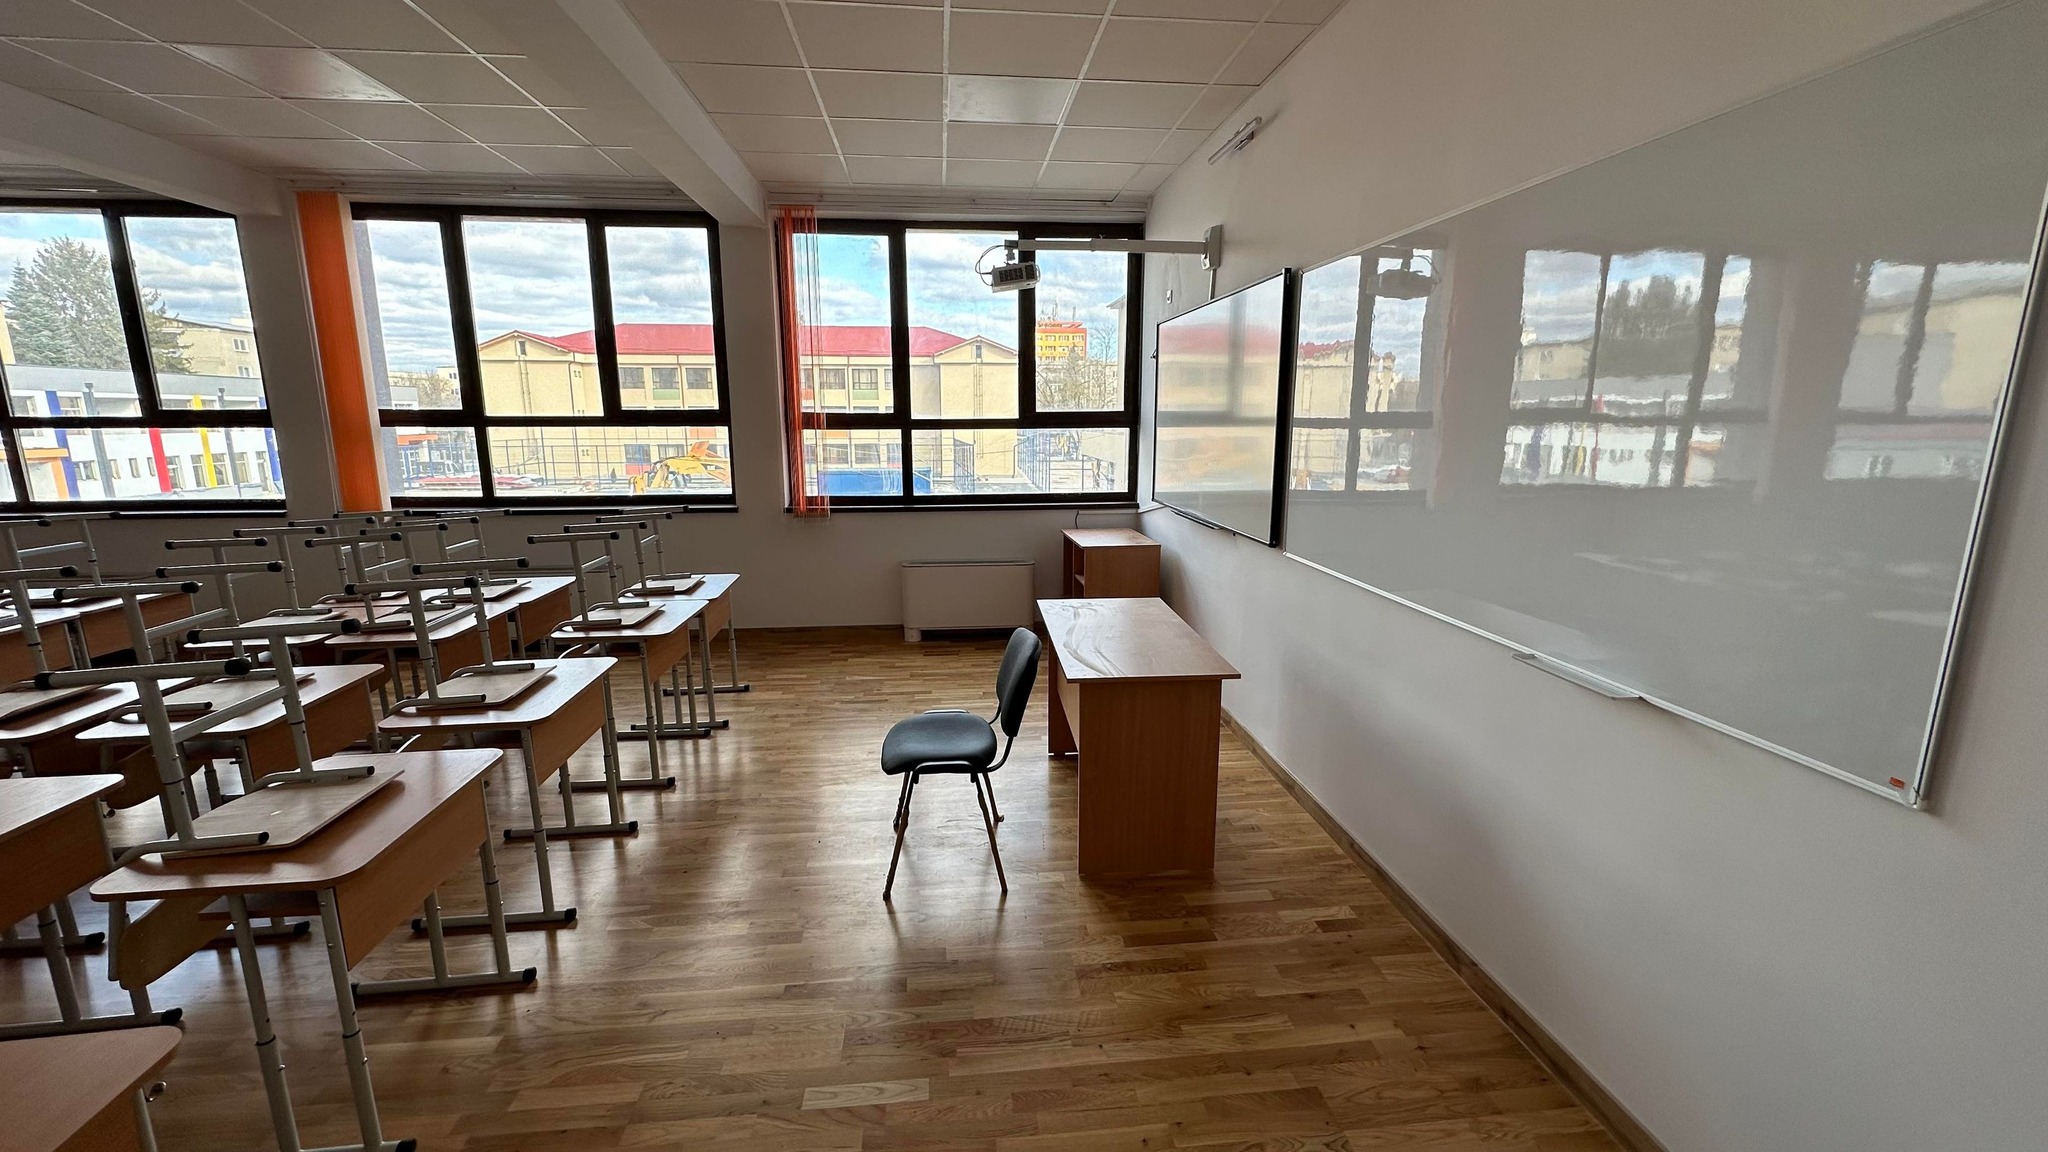 Primarul Florin Oancea Școala Generală ”Andrei Șaguna” din Deva este reabilitată și modernizată pe fonduri europene